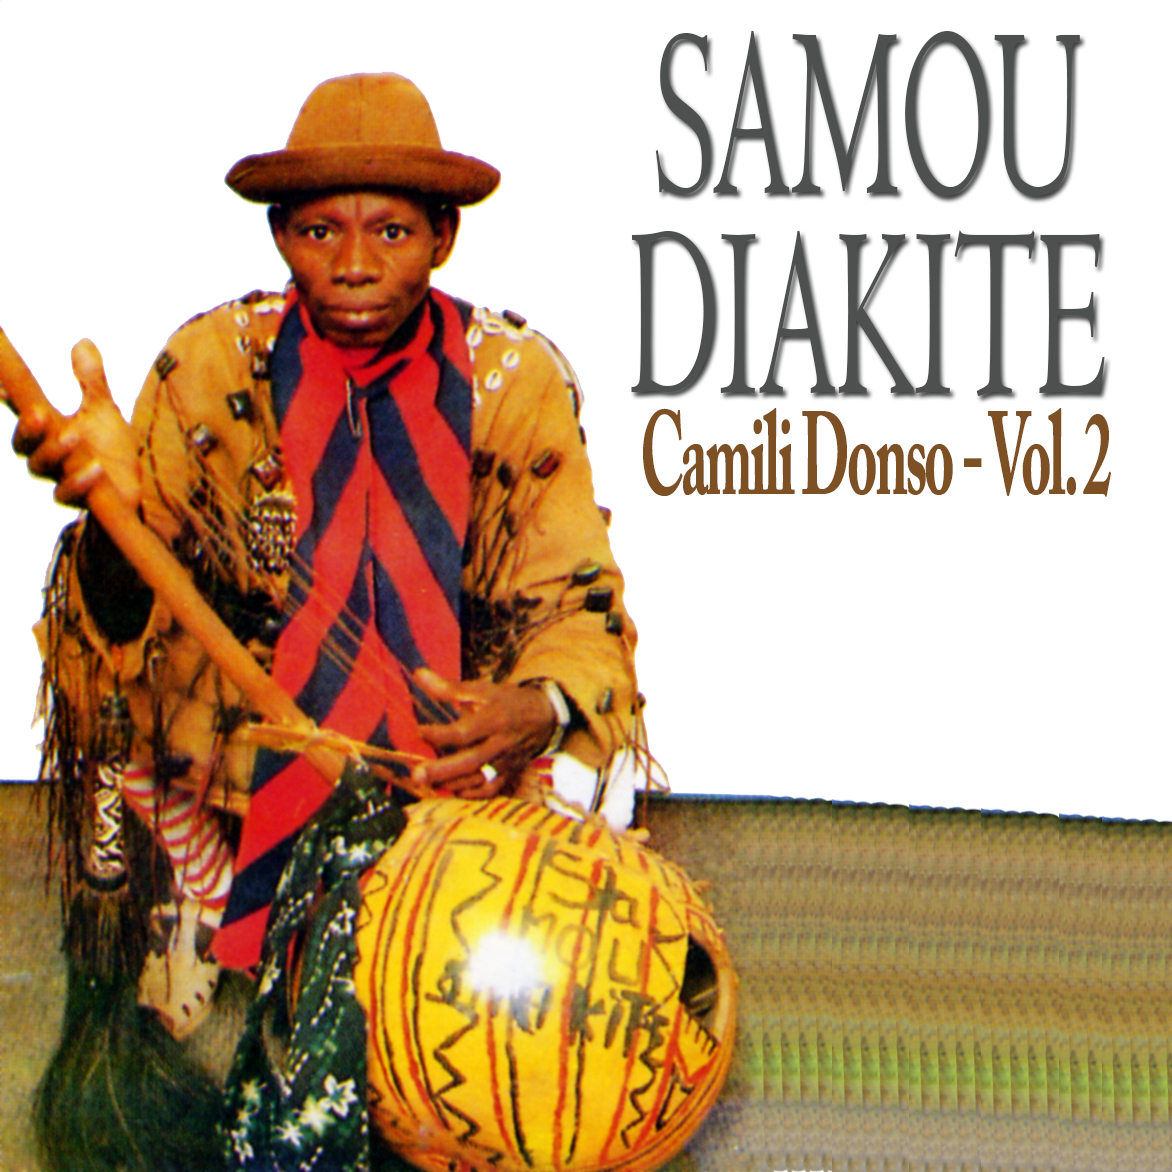 Sambou  Diakité Album: Camili donso vol 2 - (2 Tracks)